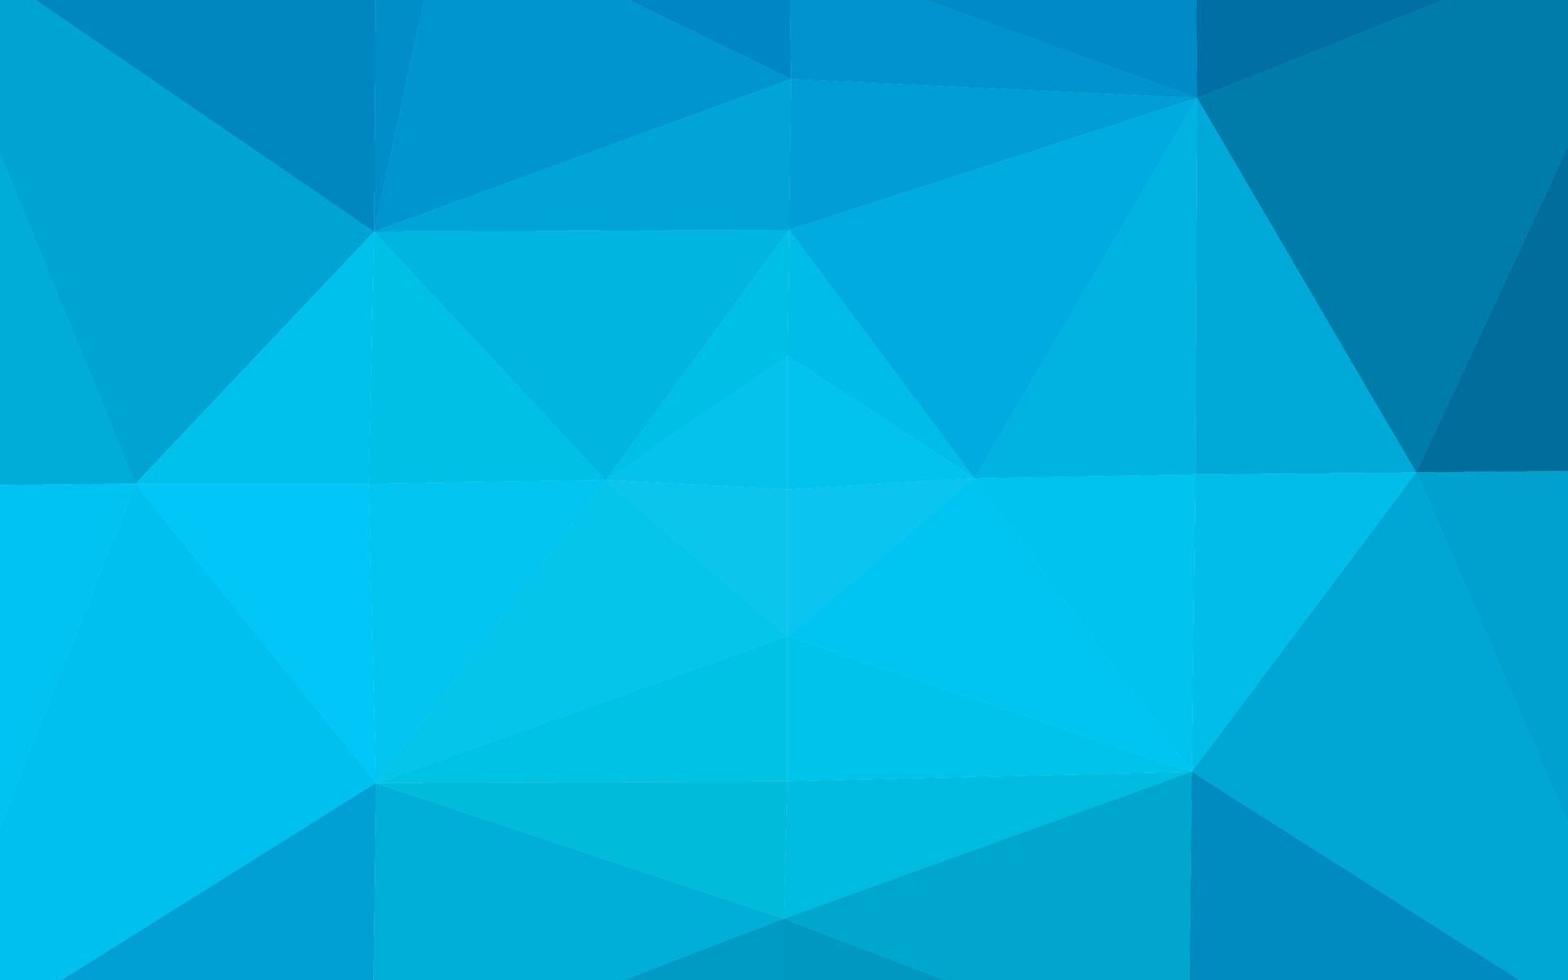 sfondo astratto poligono vettoriale blu chiaro.